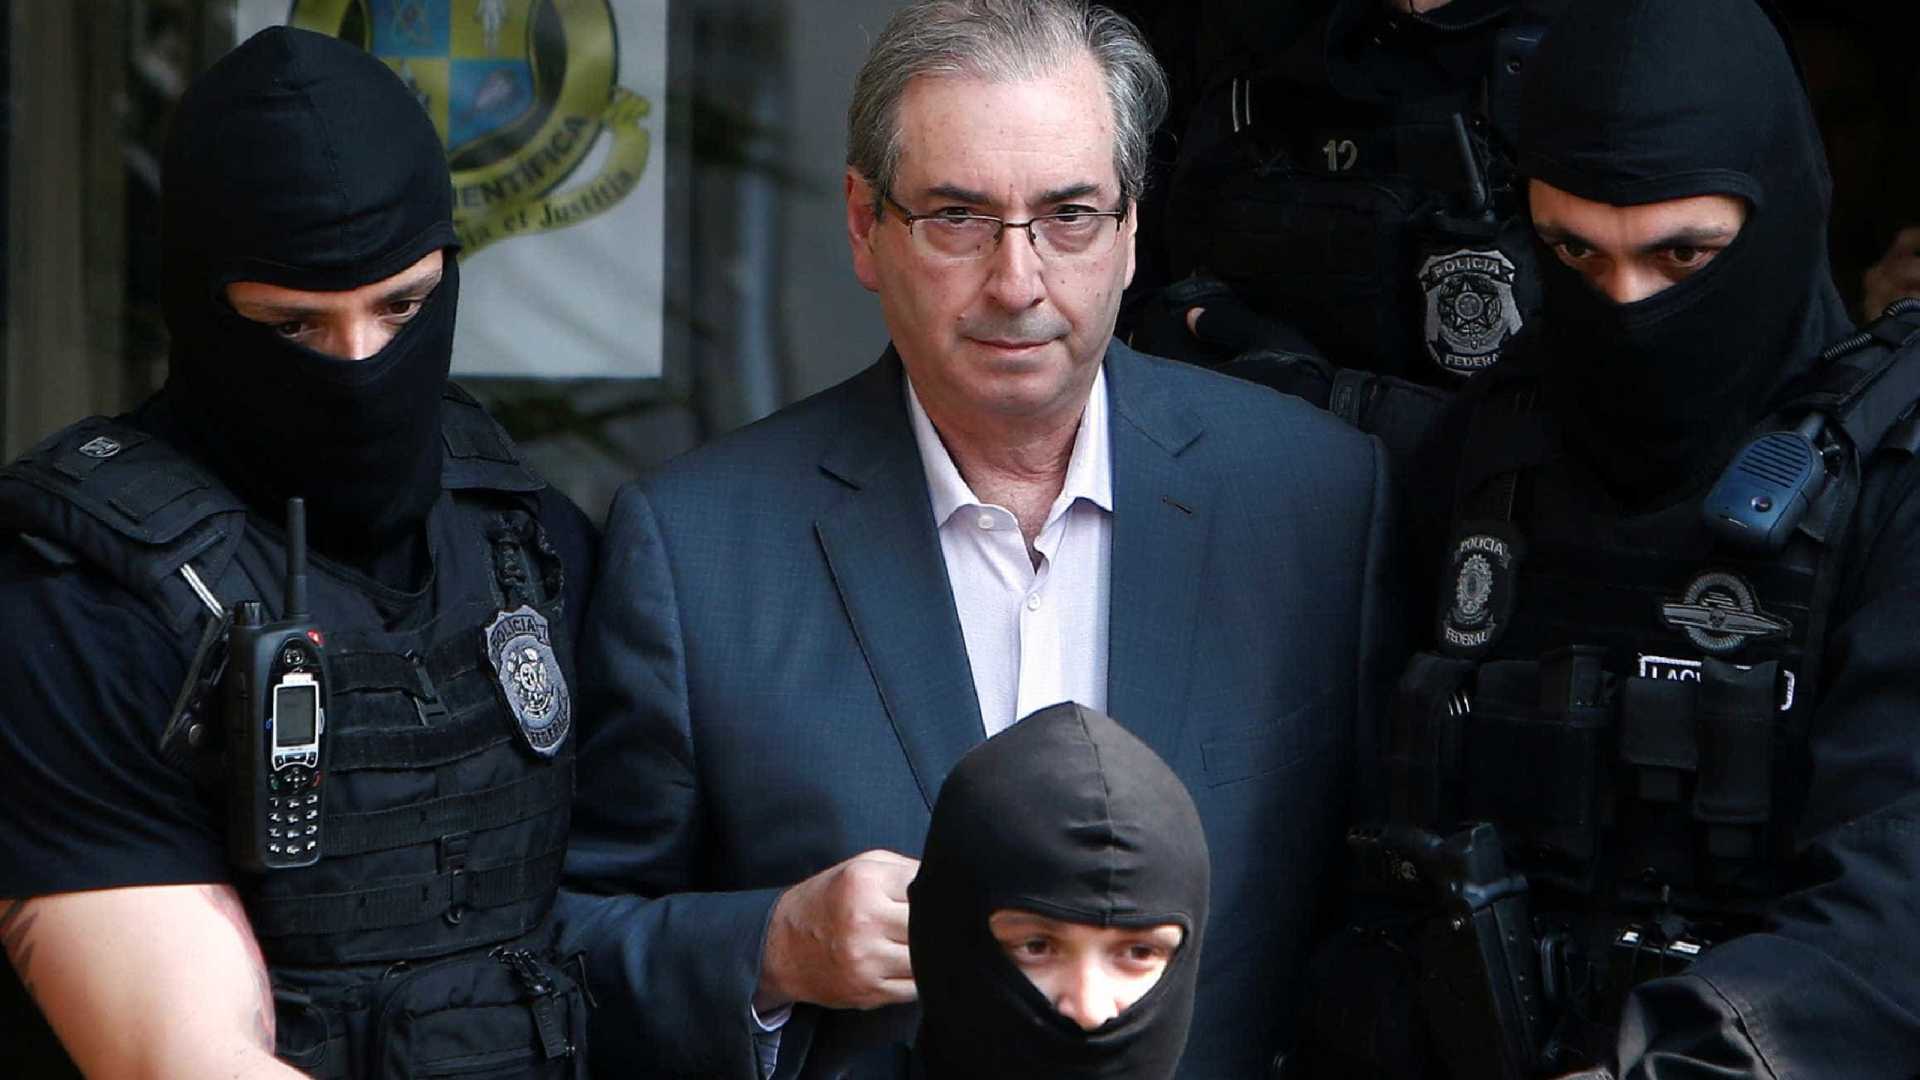 Juiz condena Cunha a 24 anos de prisão por desvios na Caixa